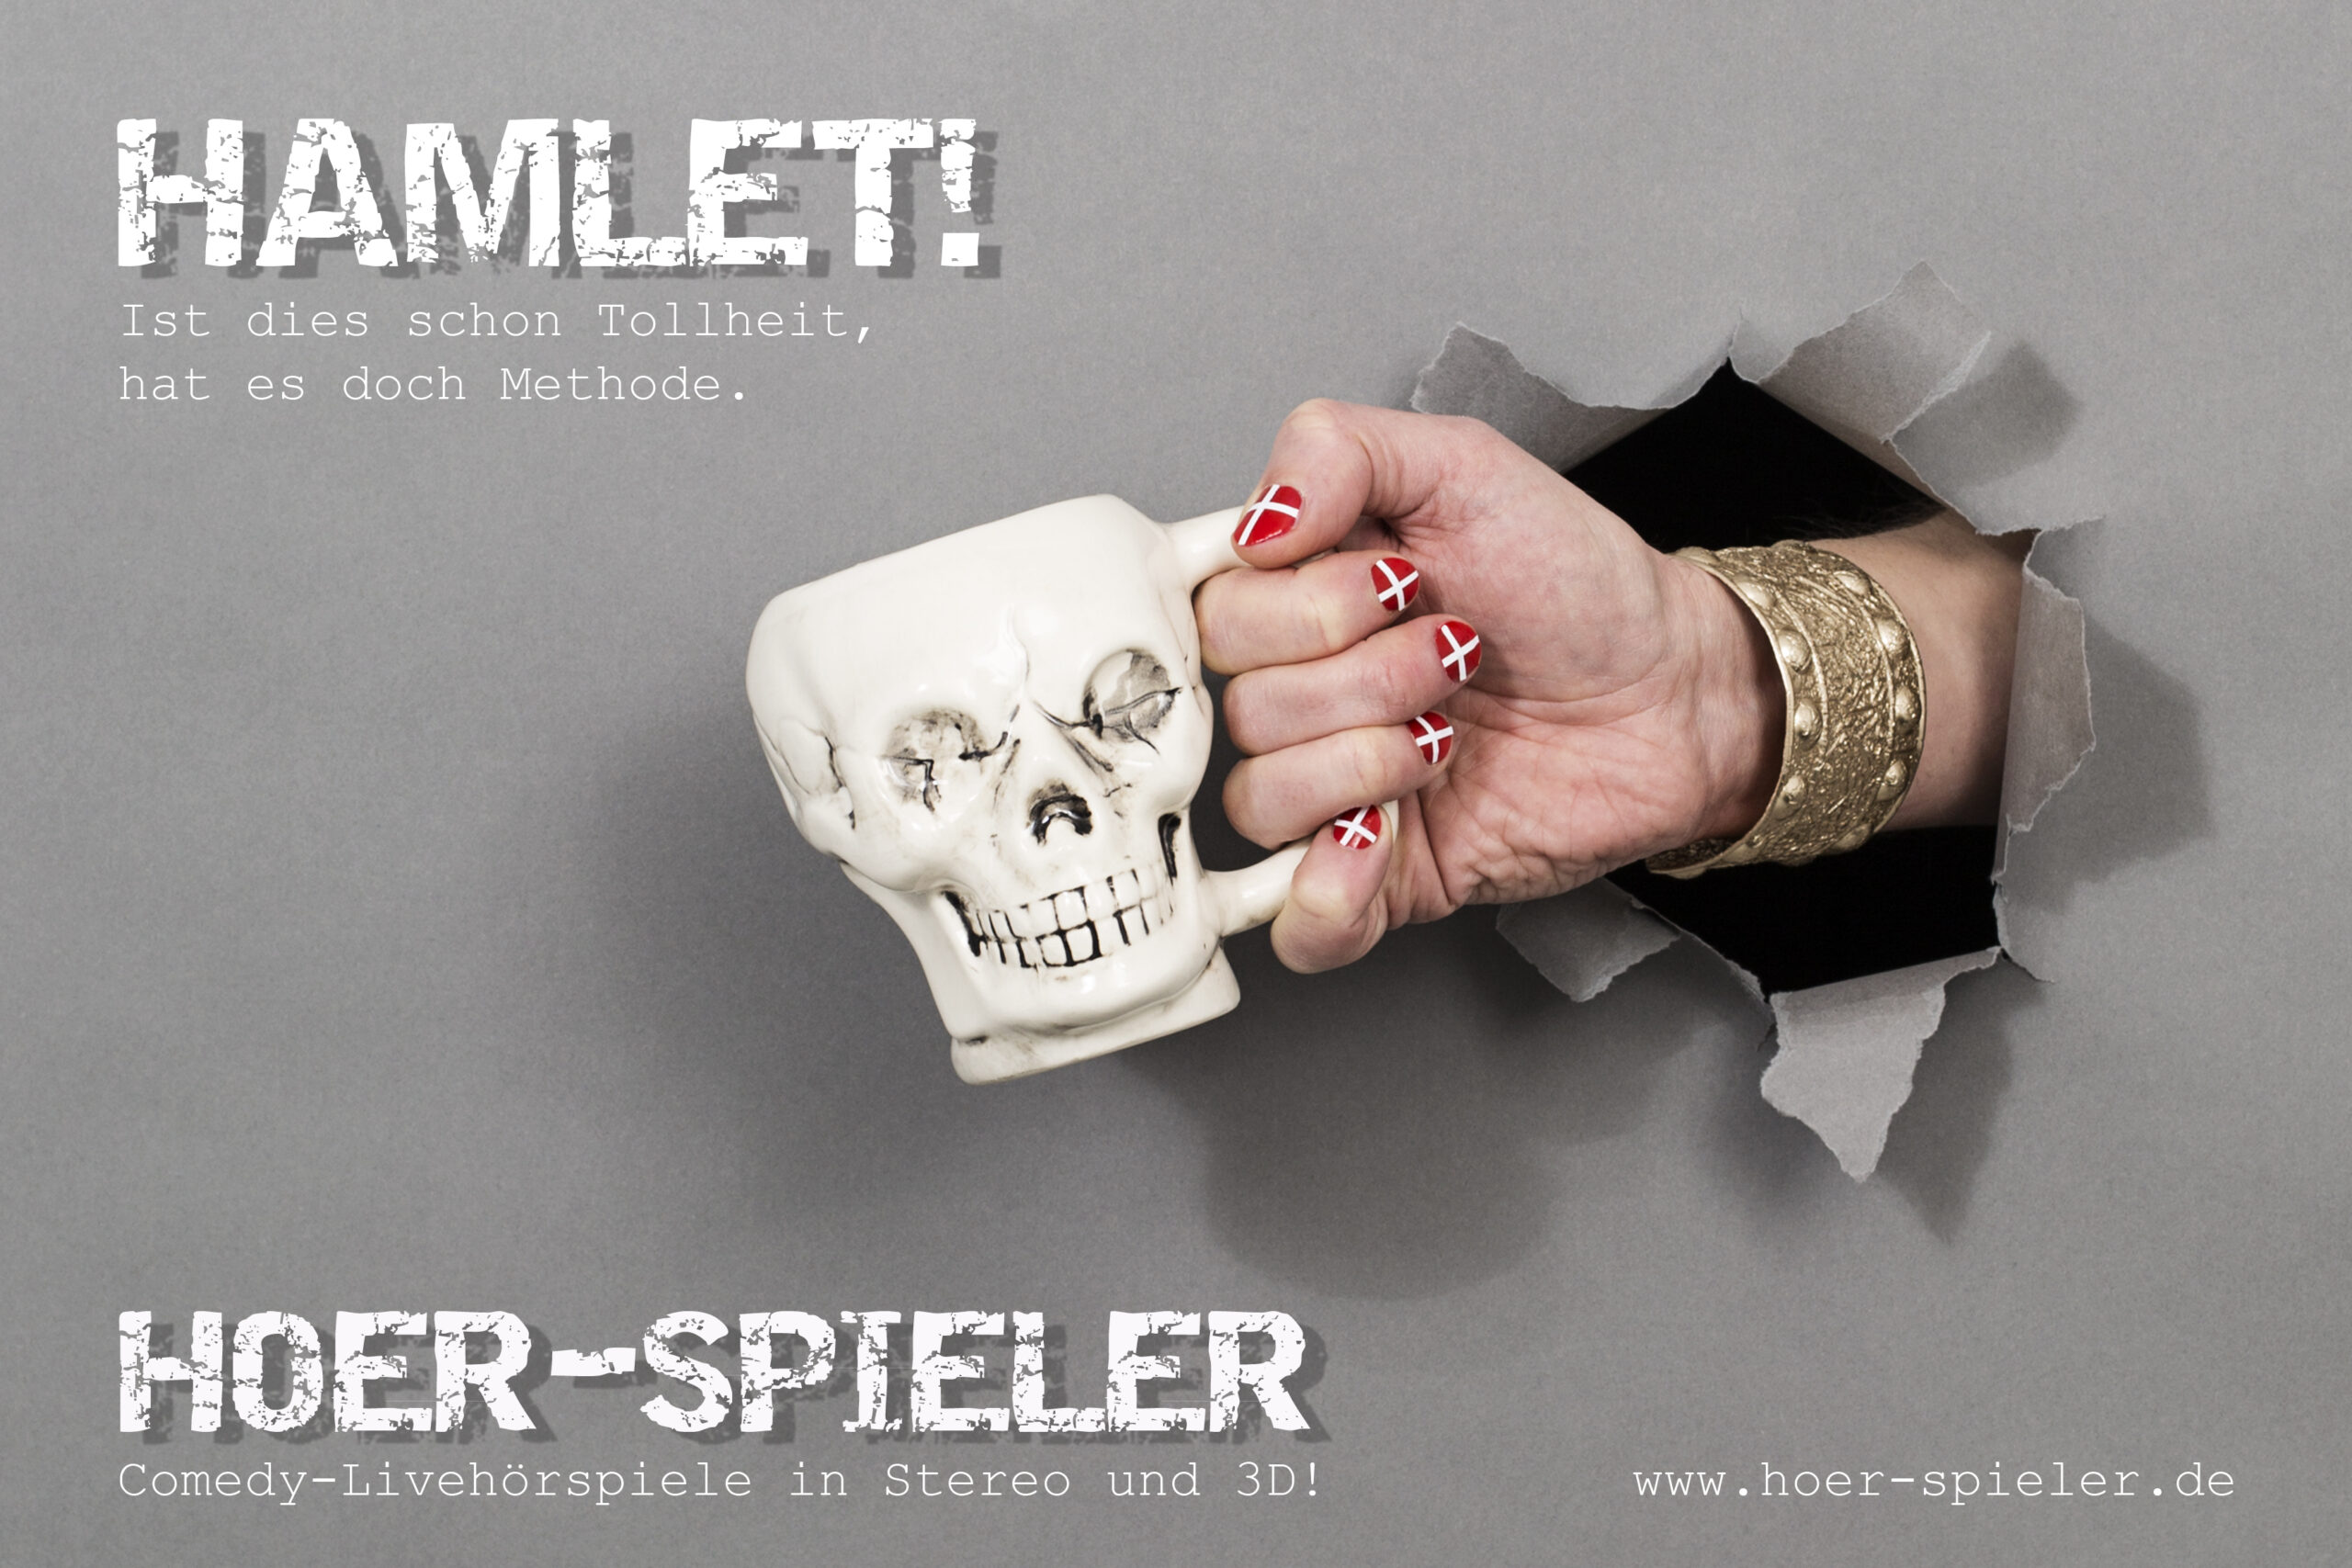 Die Hoer-Spieler knöpfen sich „Hamlet“ vor – Heute Premiere für Comedy-Livehörspiel